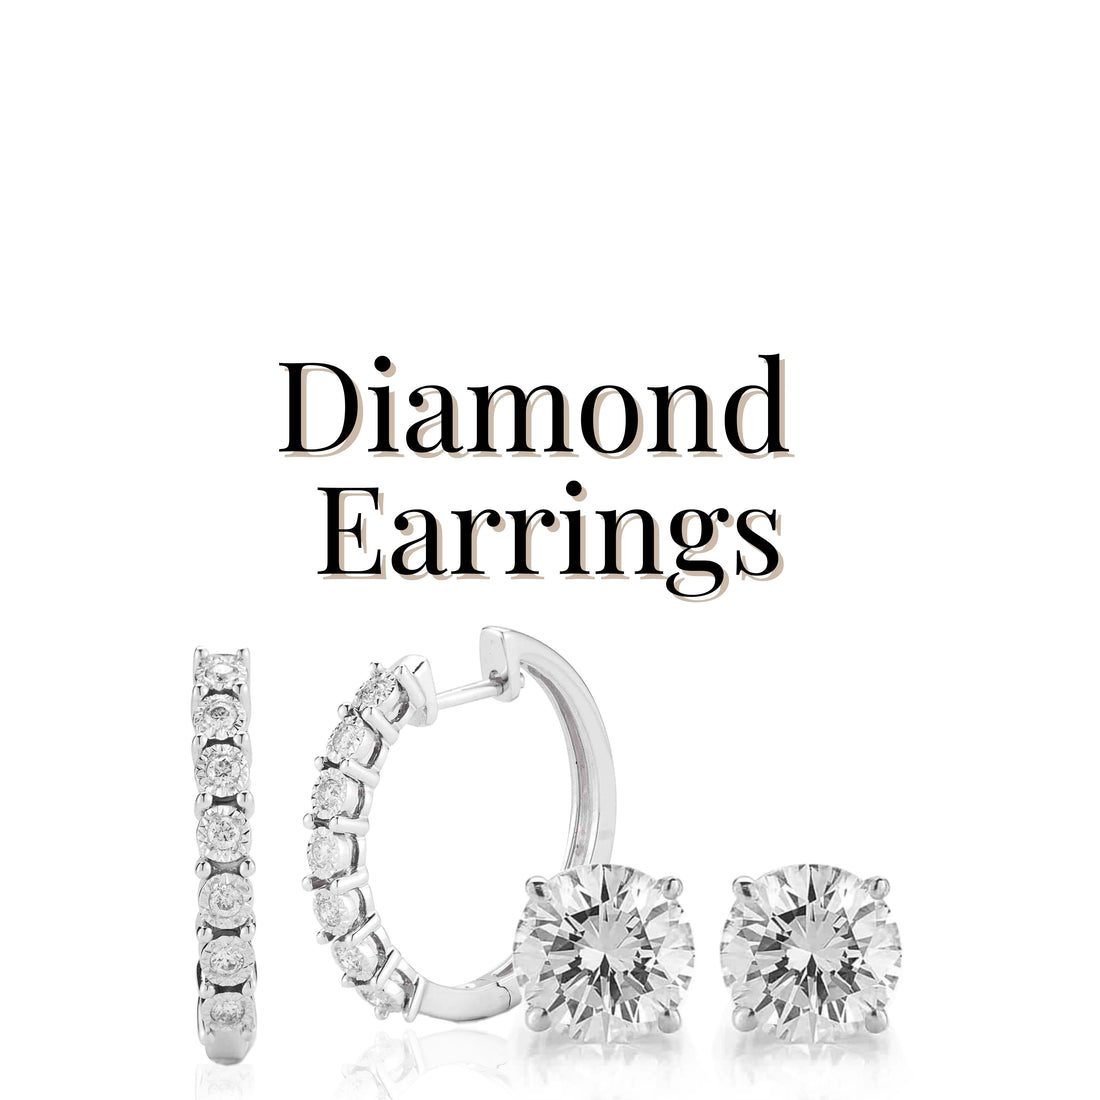  Diamond Earrings - Diamond Designs